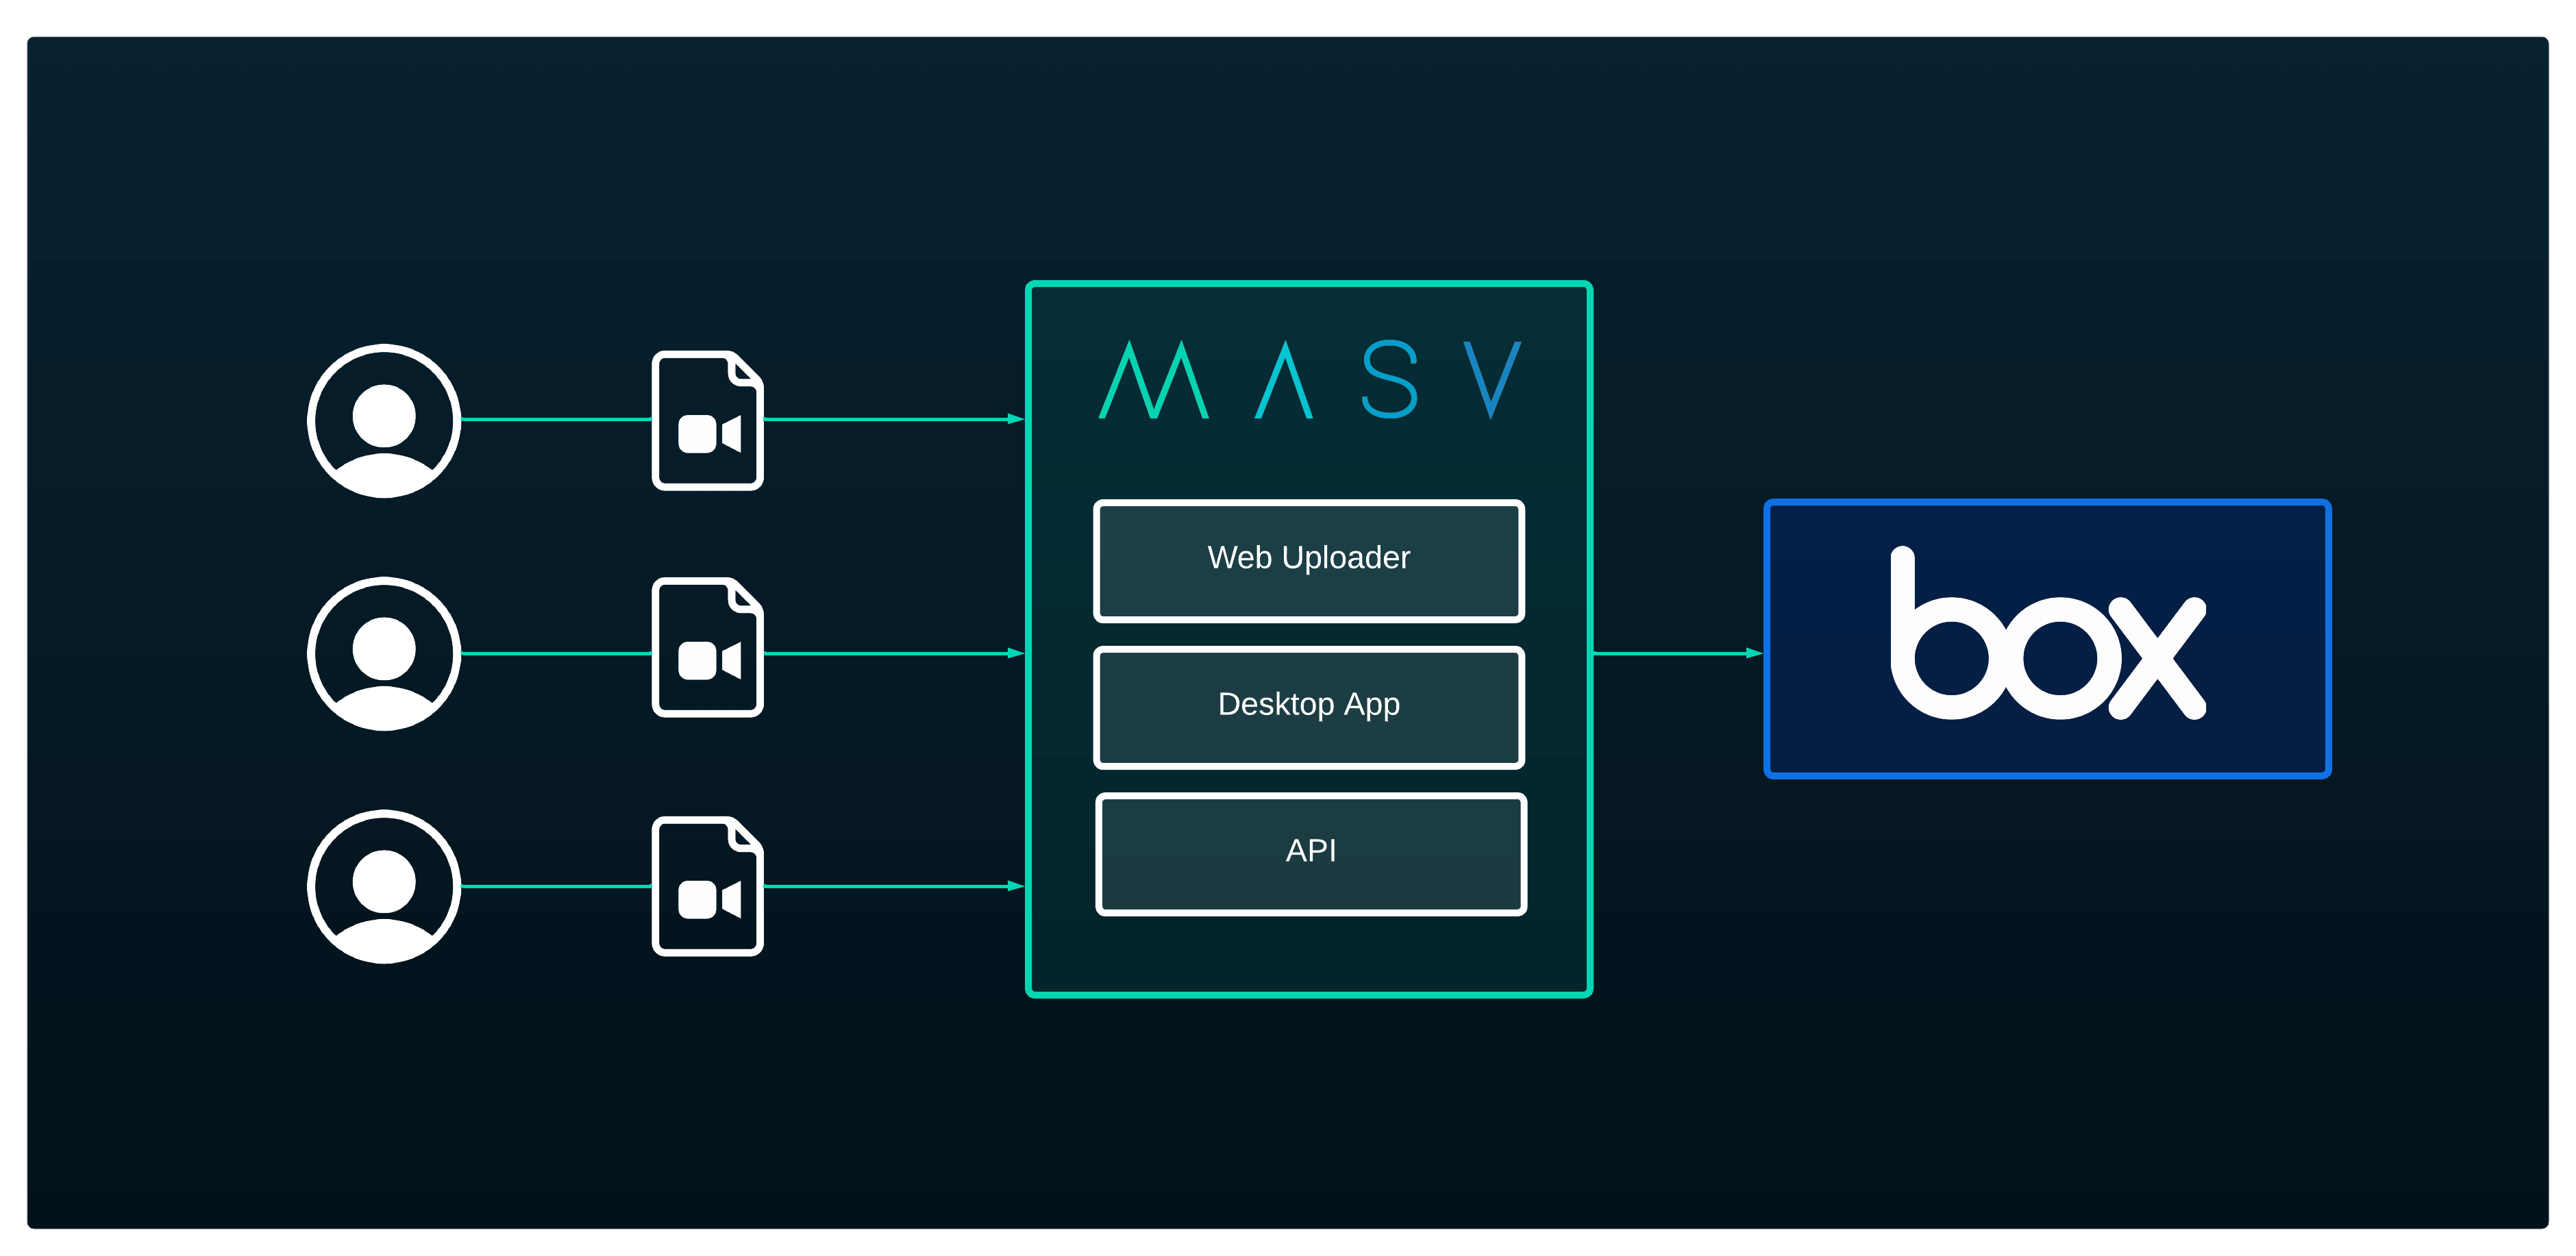 Cómo subir archivos grandes a la caja con los Portales MASV